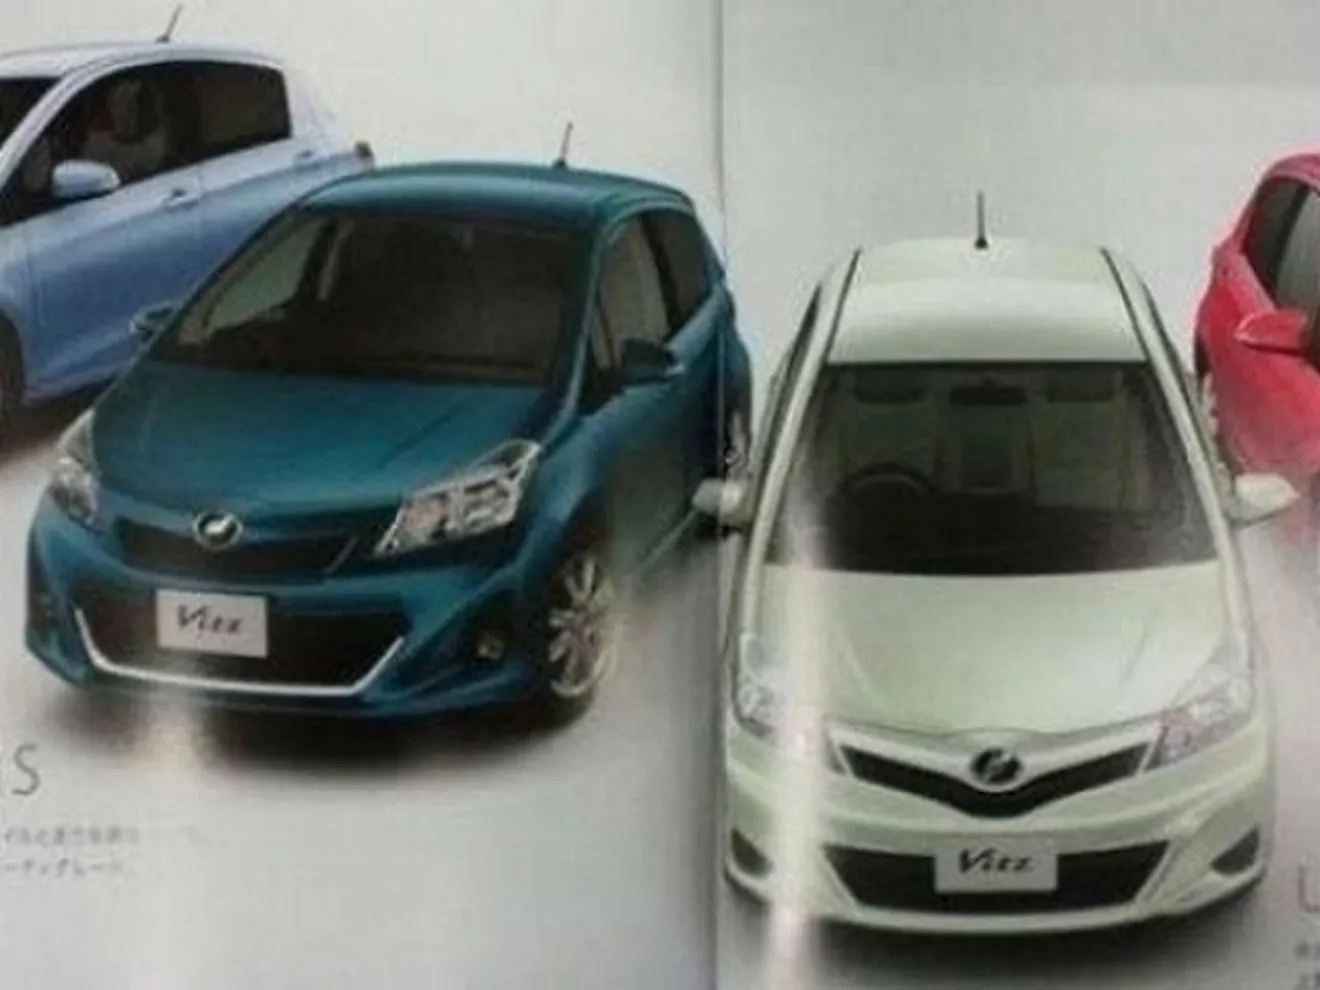 Toyota Yaris 2012, imágenes filtradas